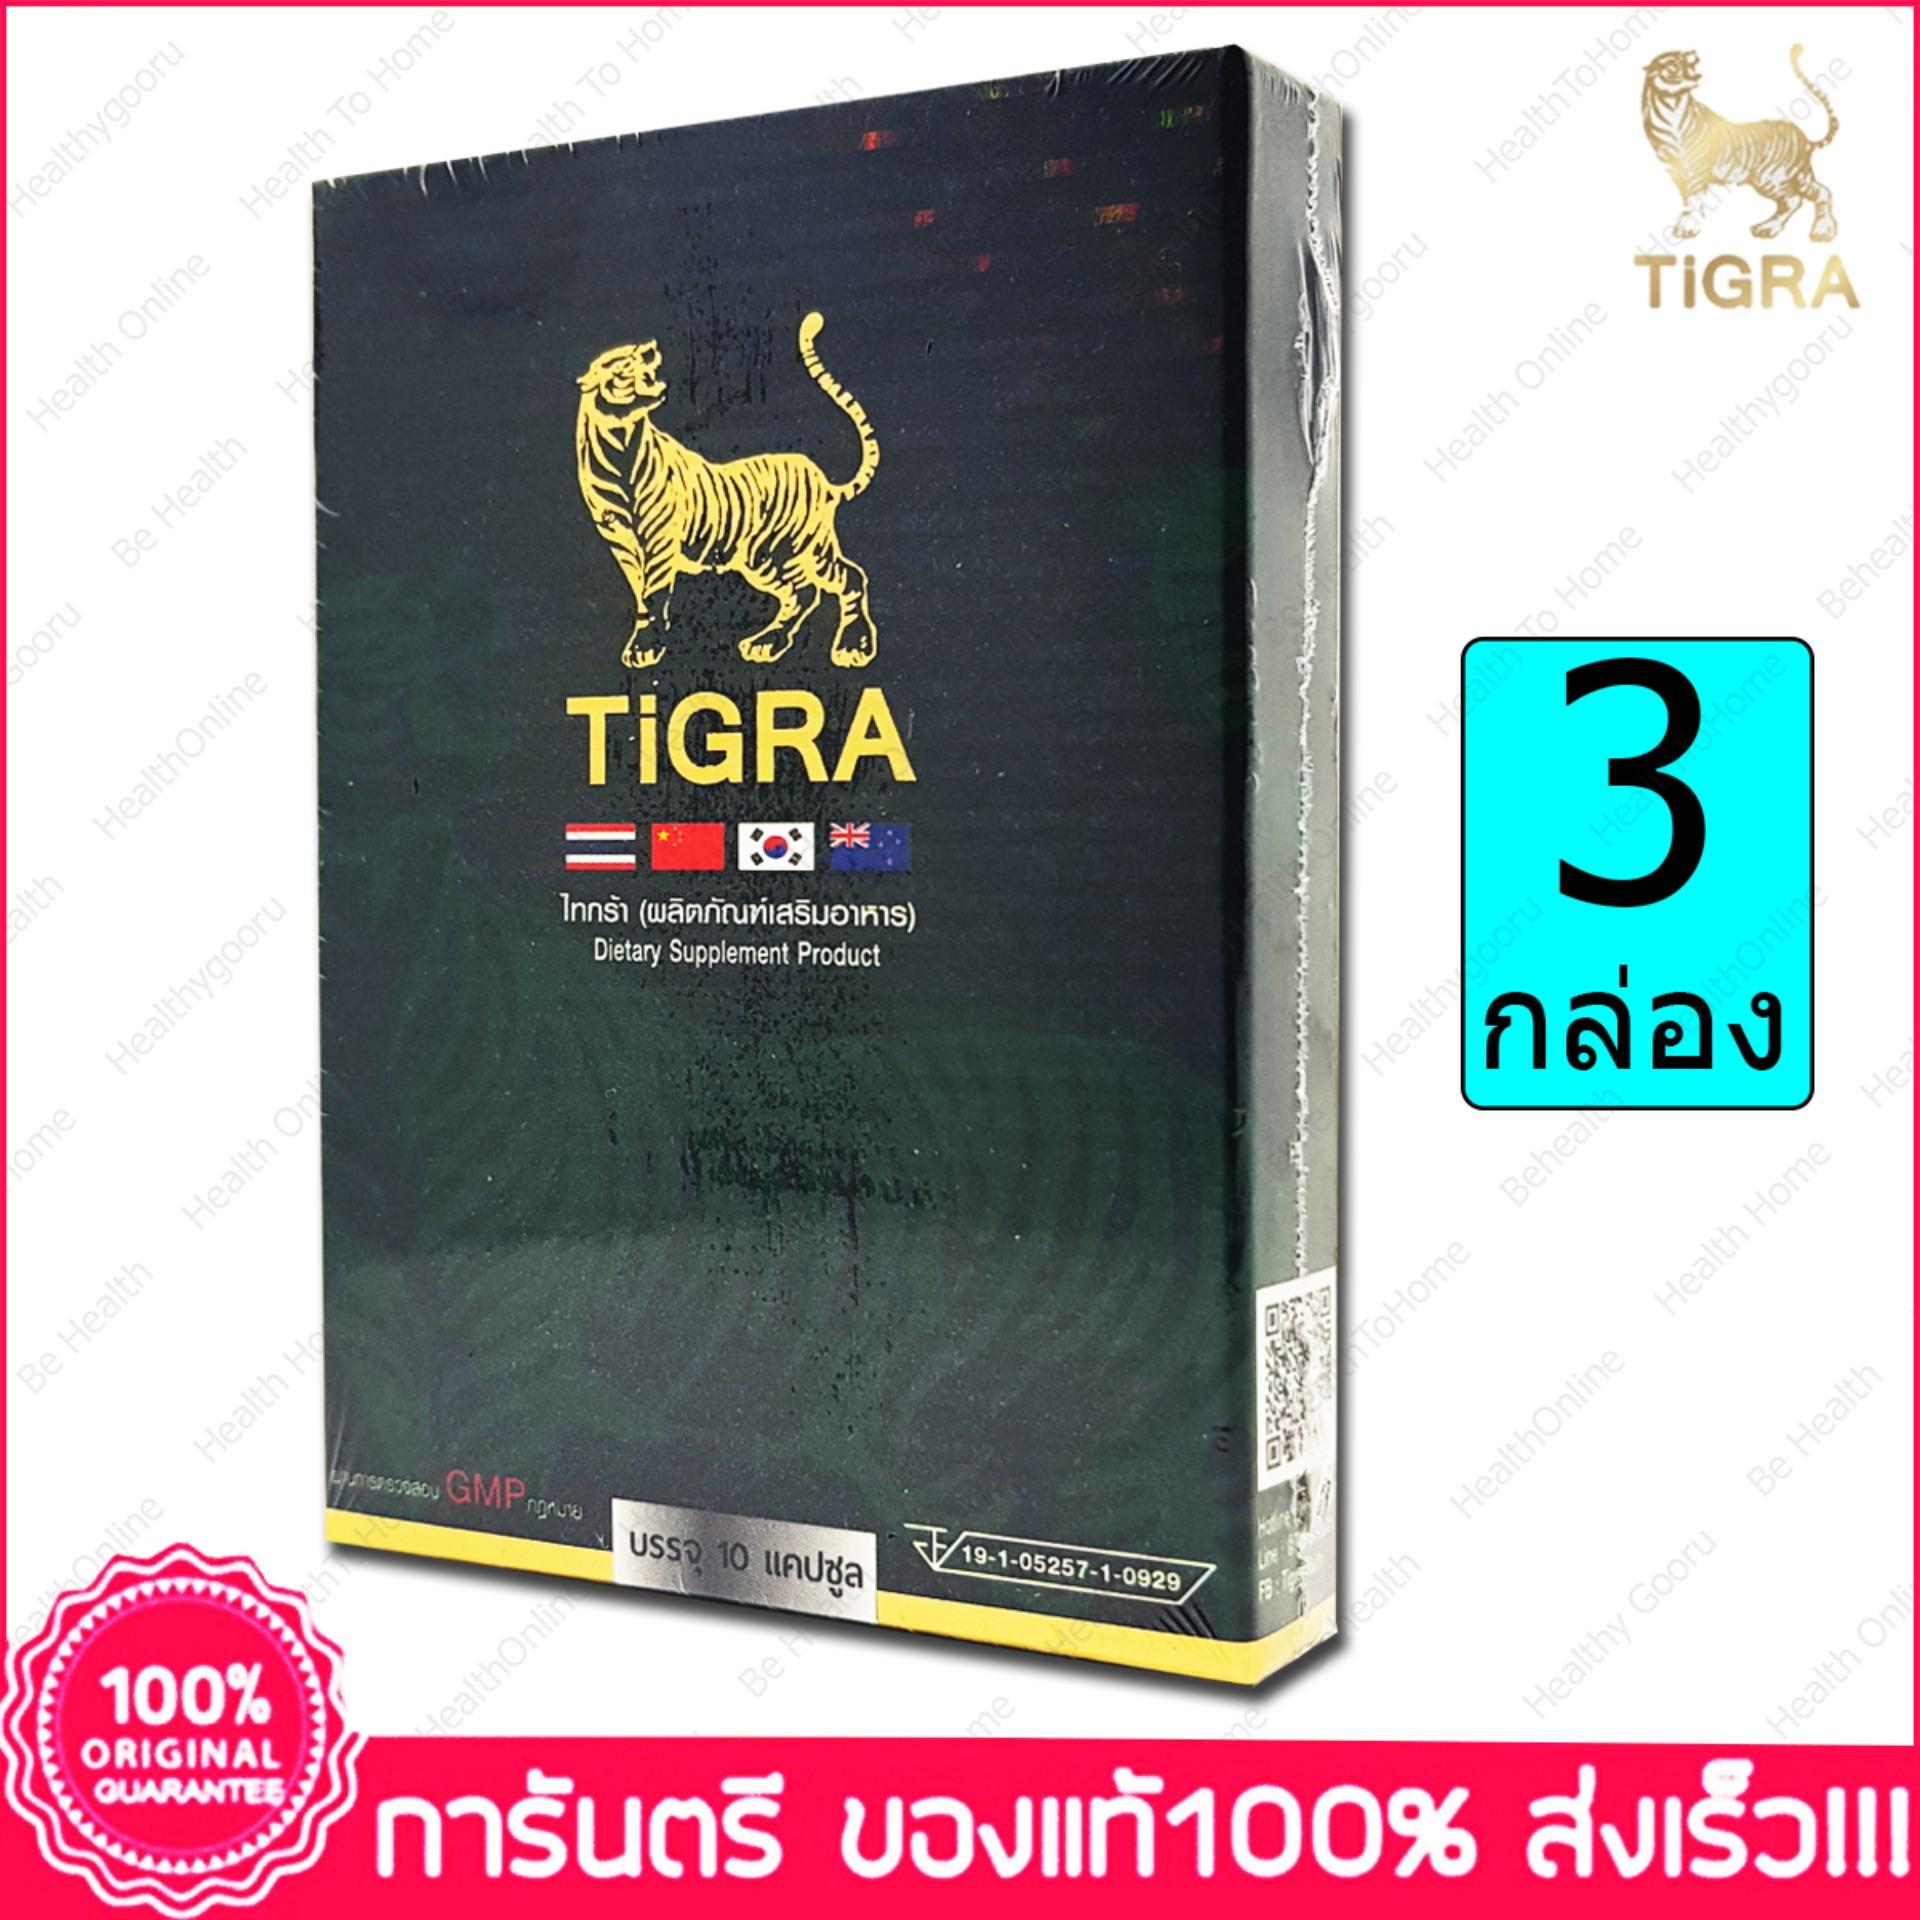 TiGra 10 capsules ไทก้า 10 แคปซูล x 3 กล่อง